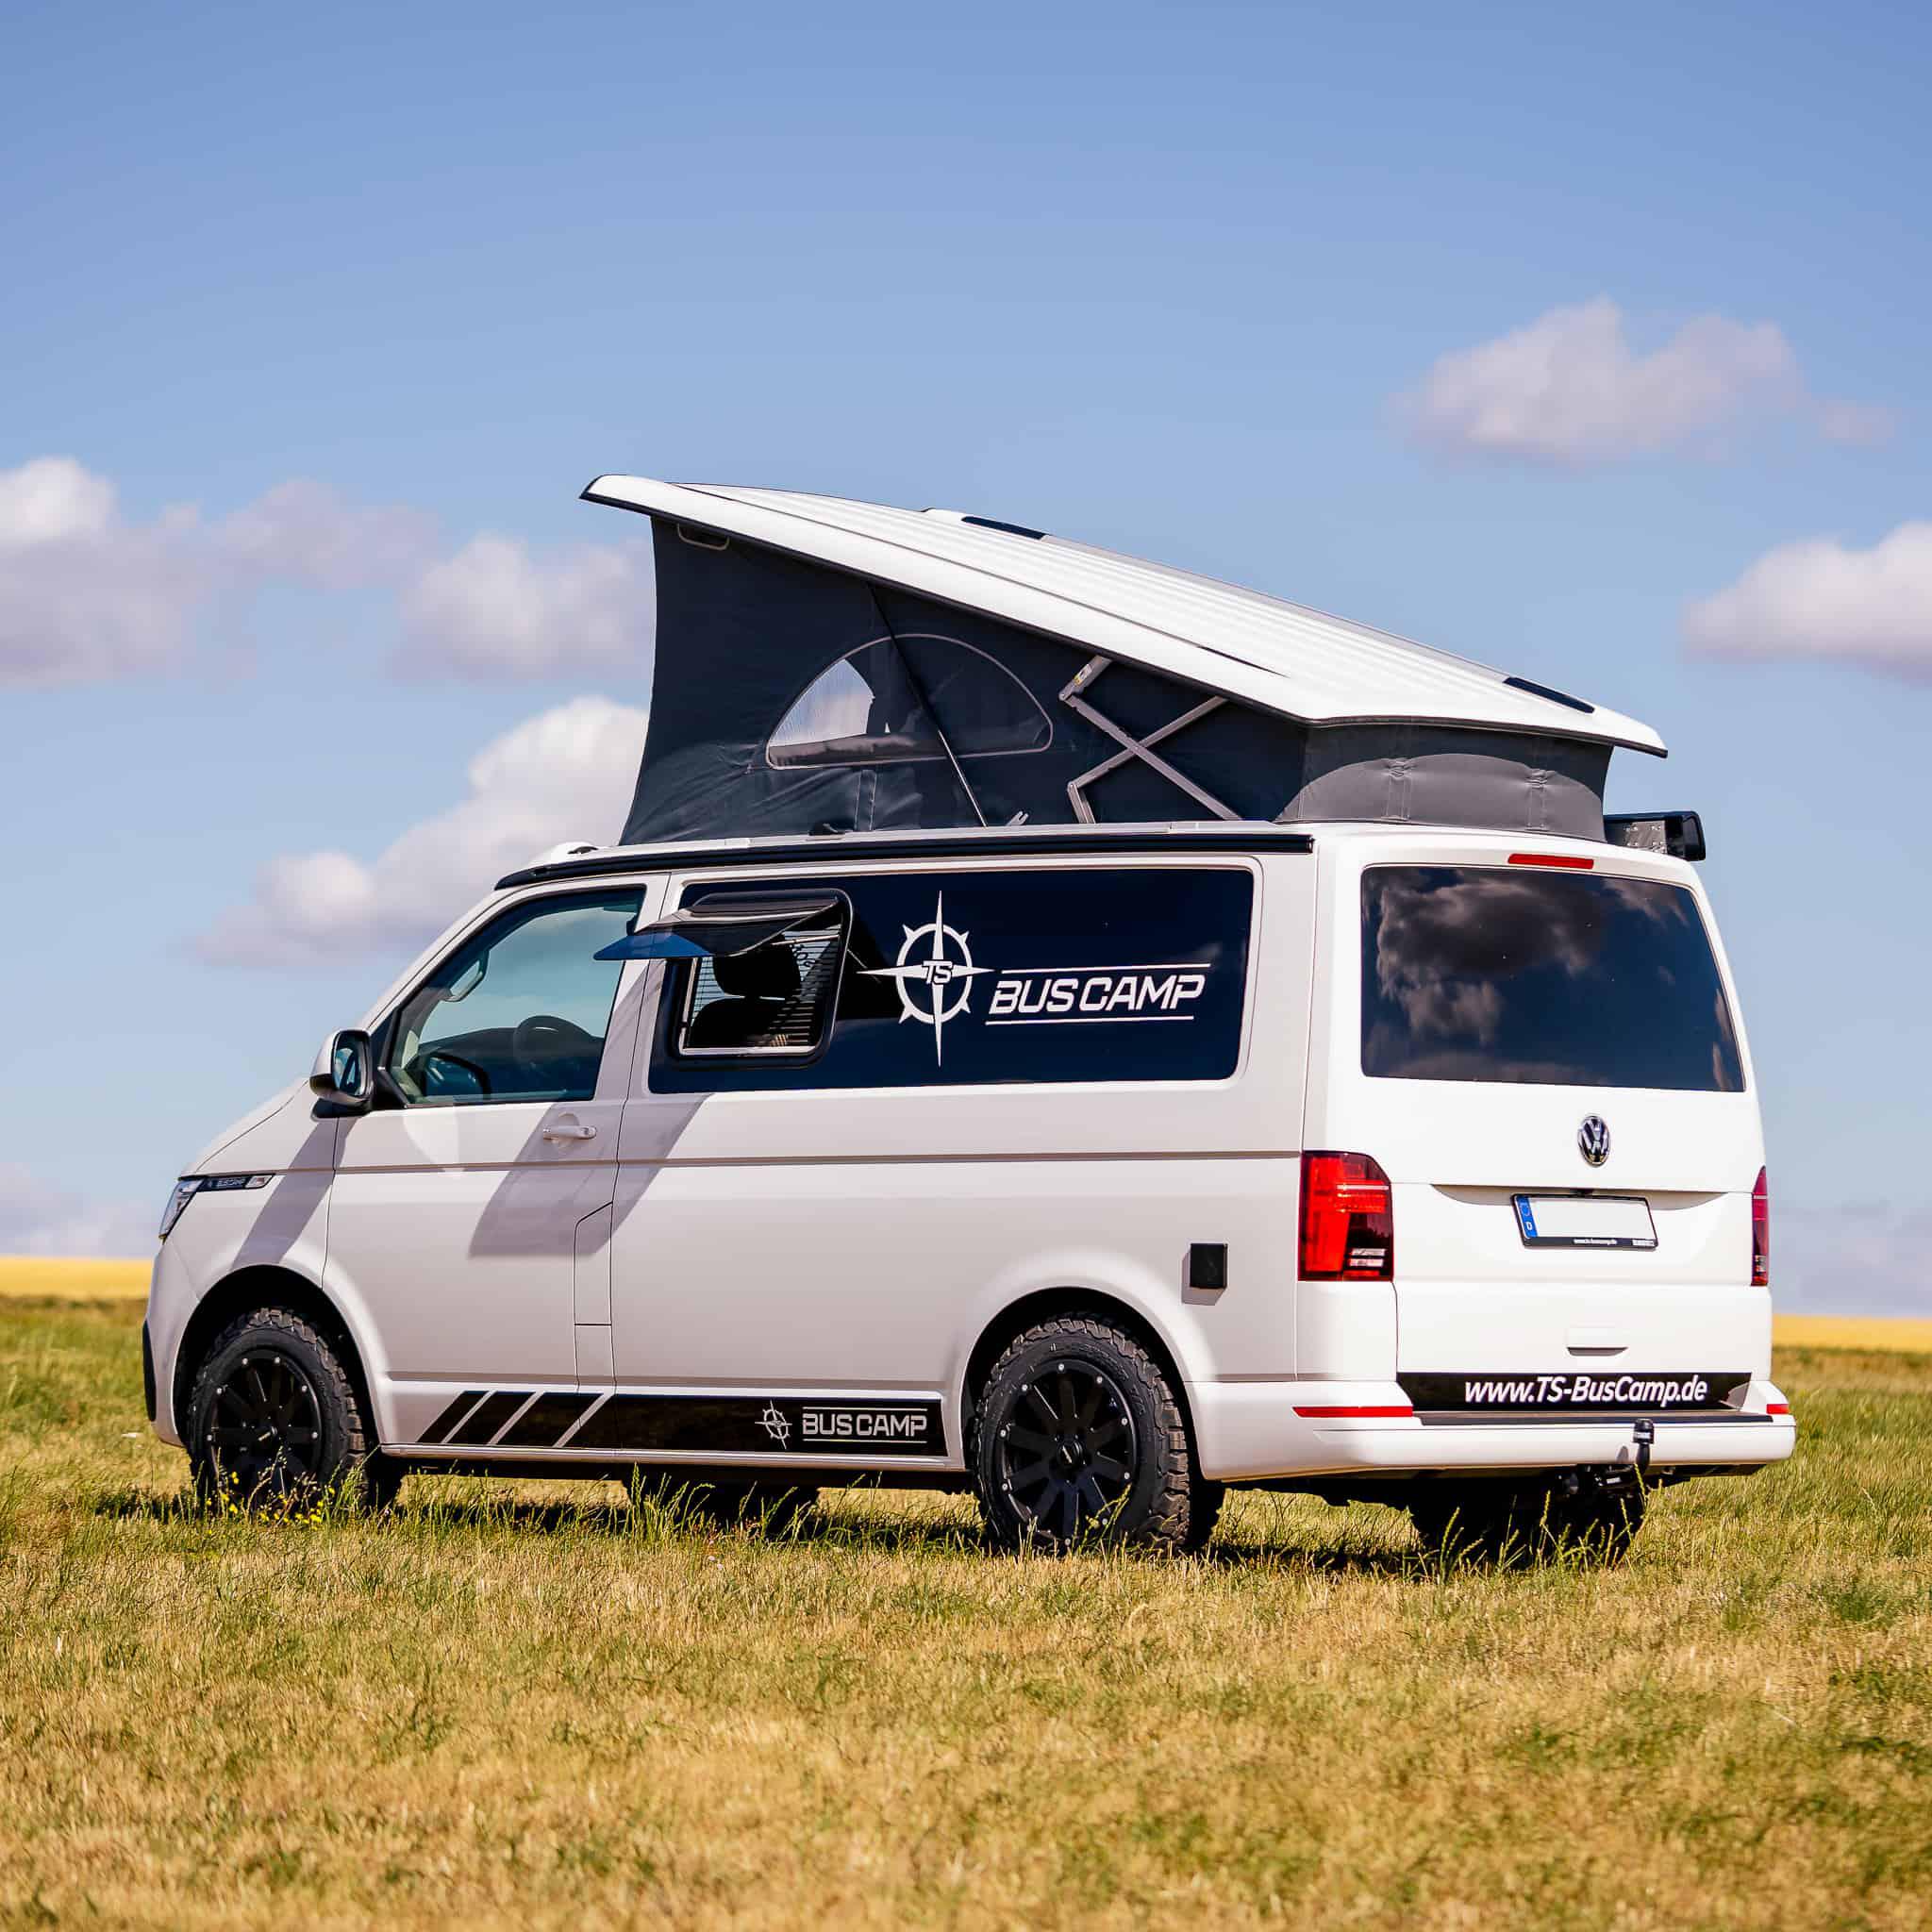 Campingbox Schranksystem für VW aufbauen